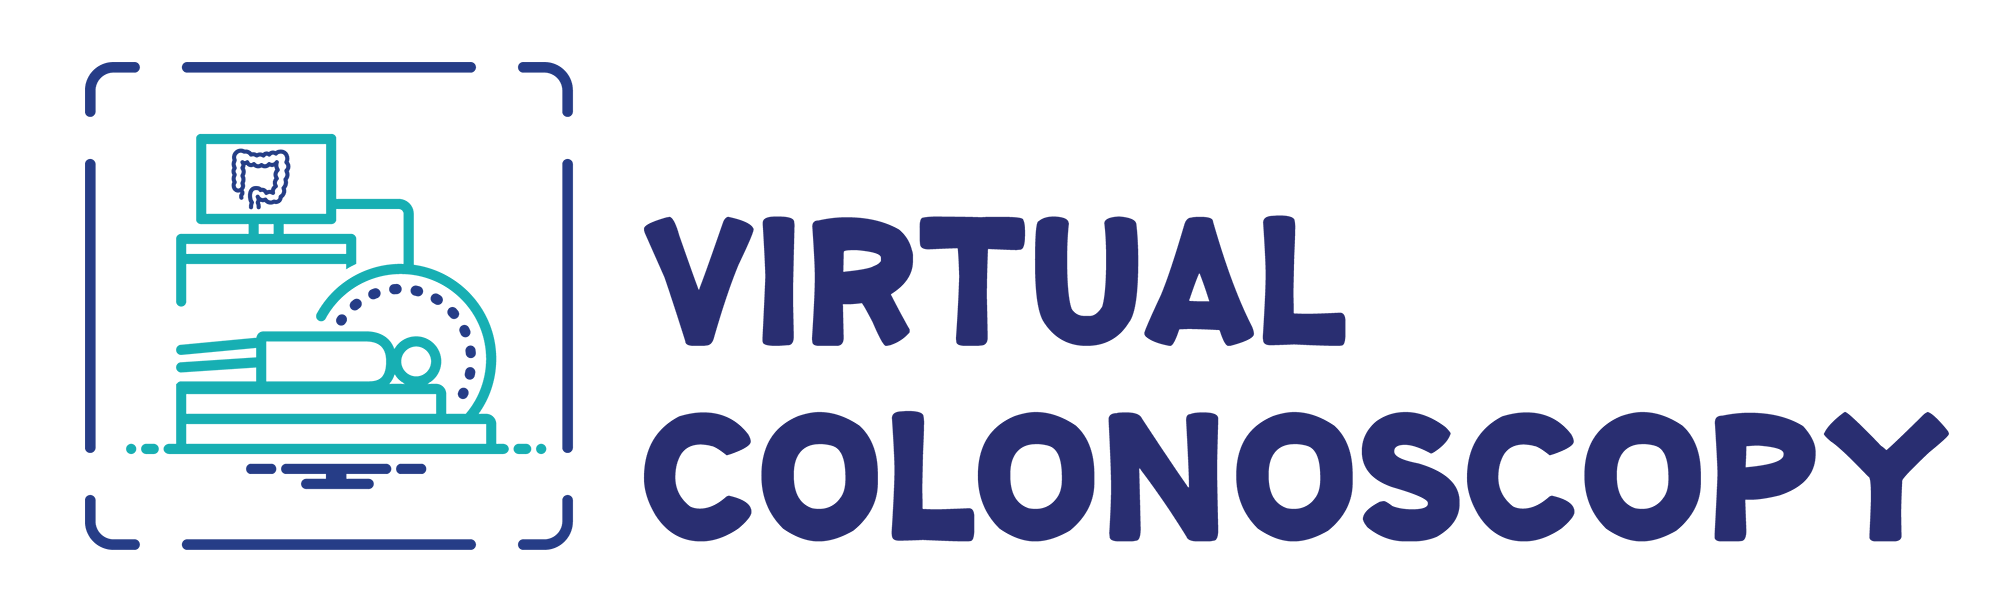 Virtual Colonoscopy, Lenox Hill Radiology ACPNY